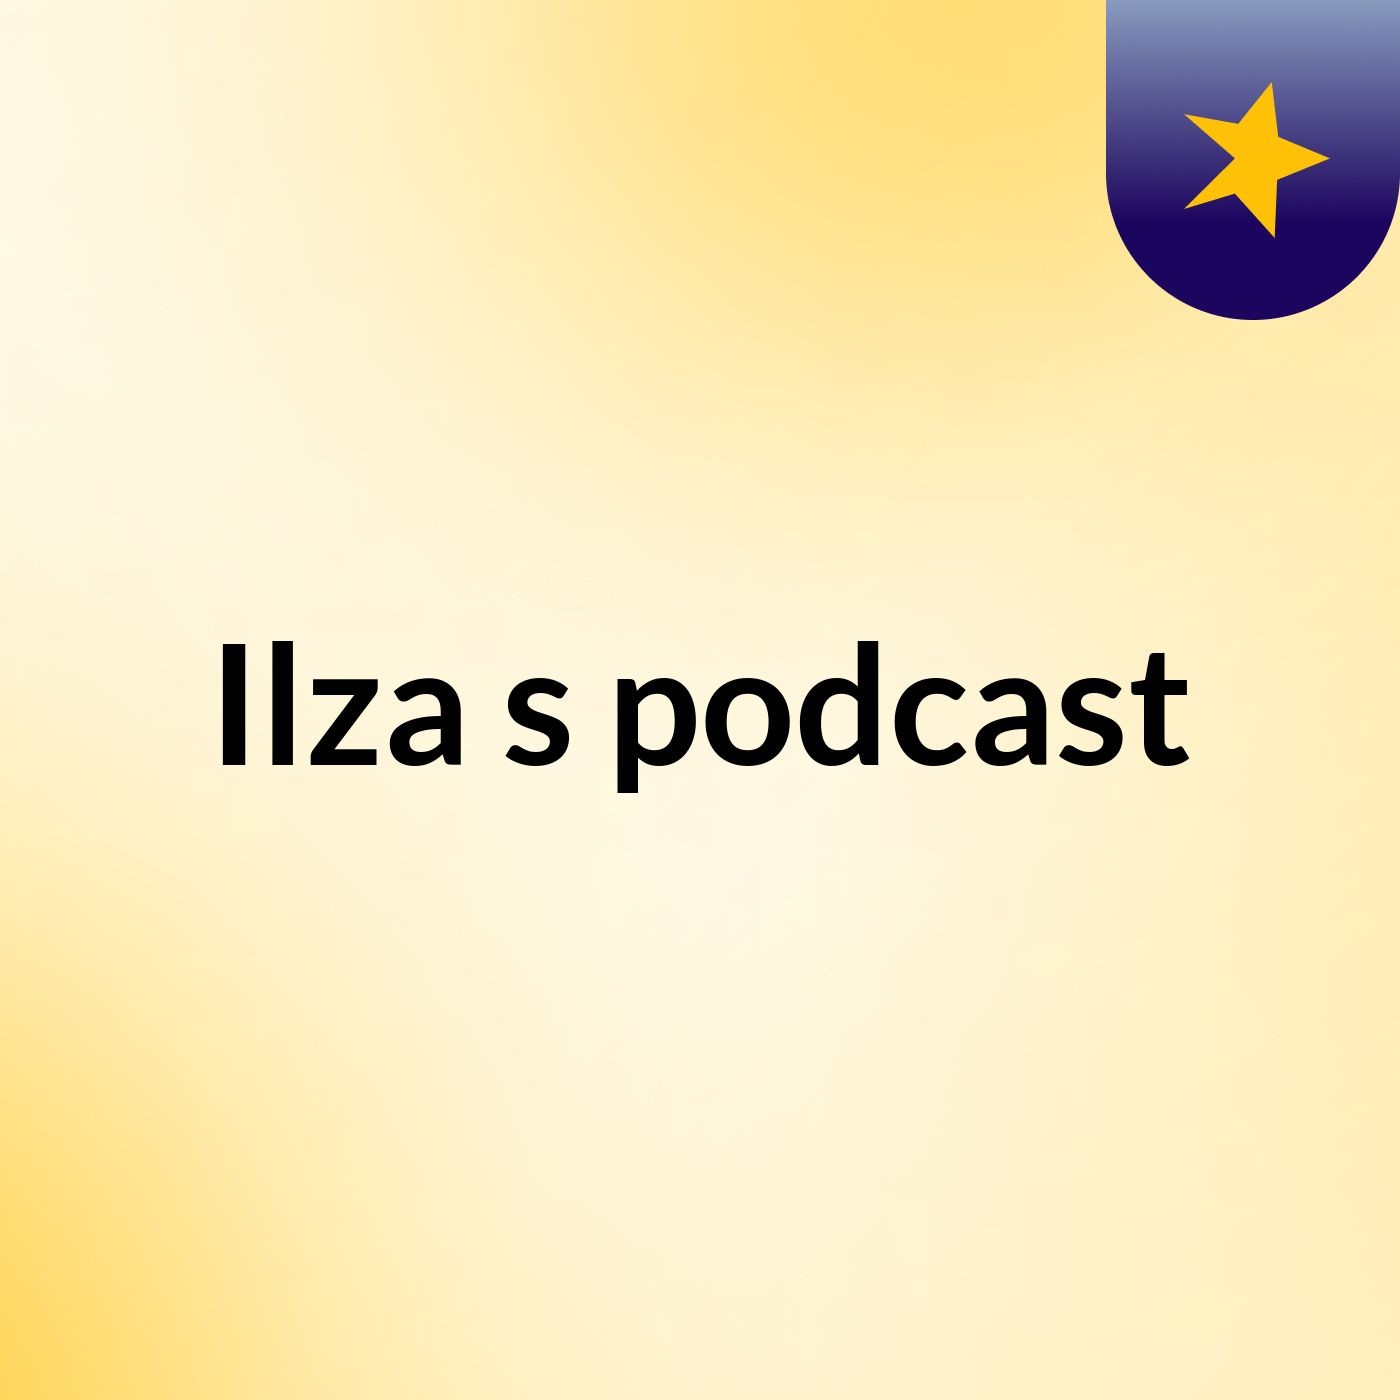 Ilza's podcast